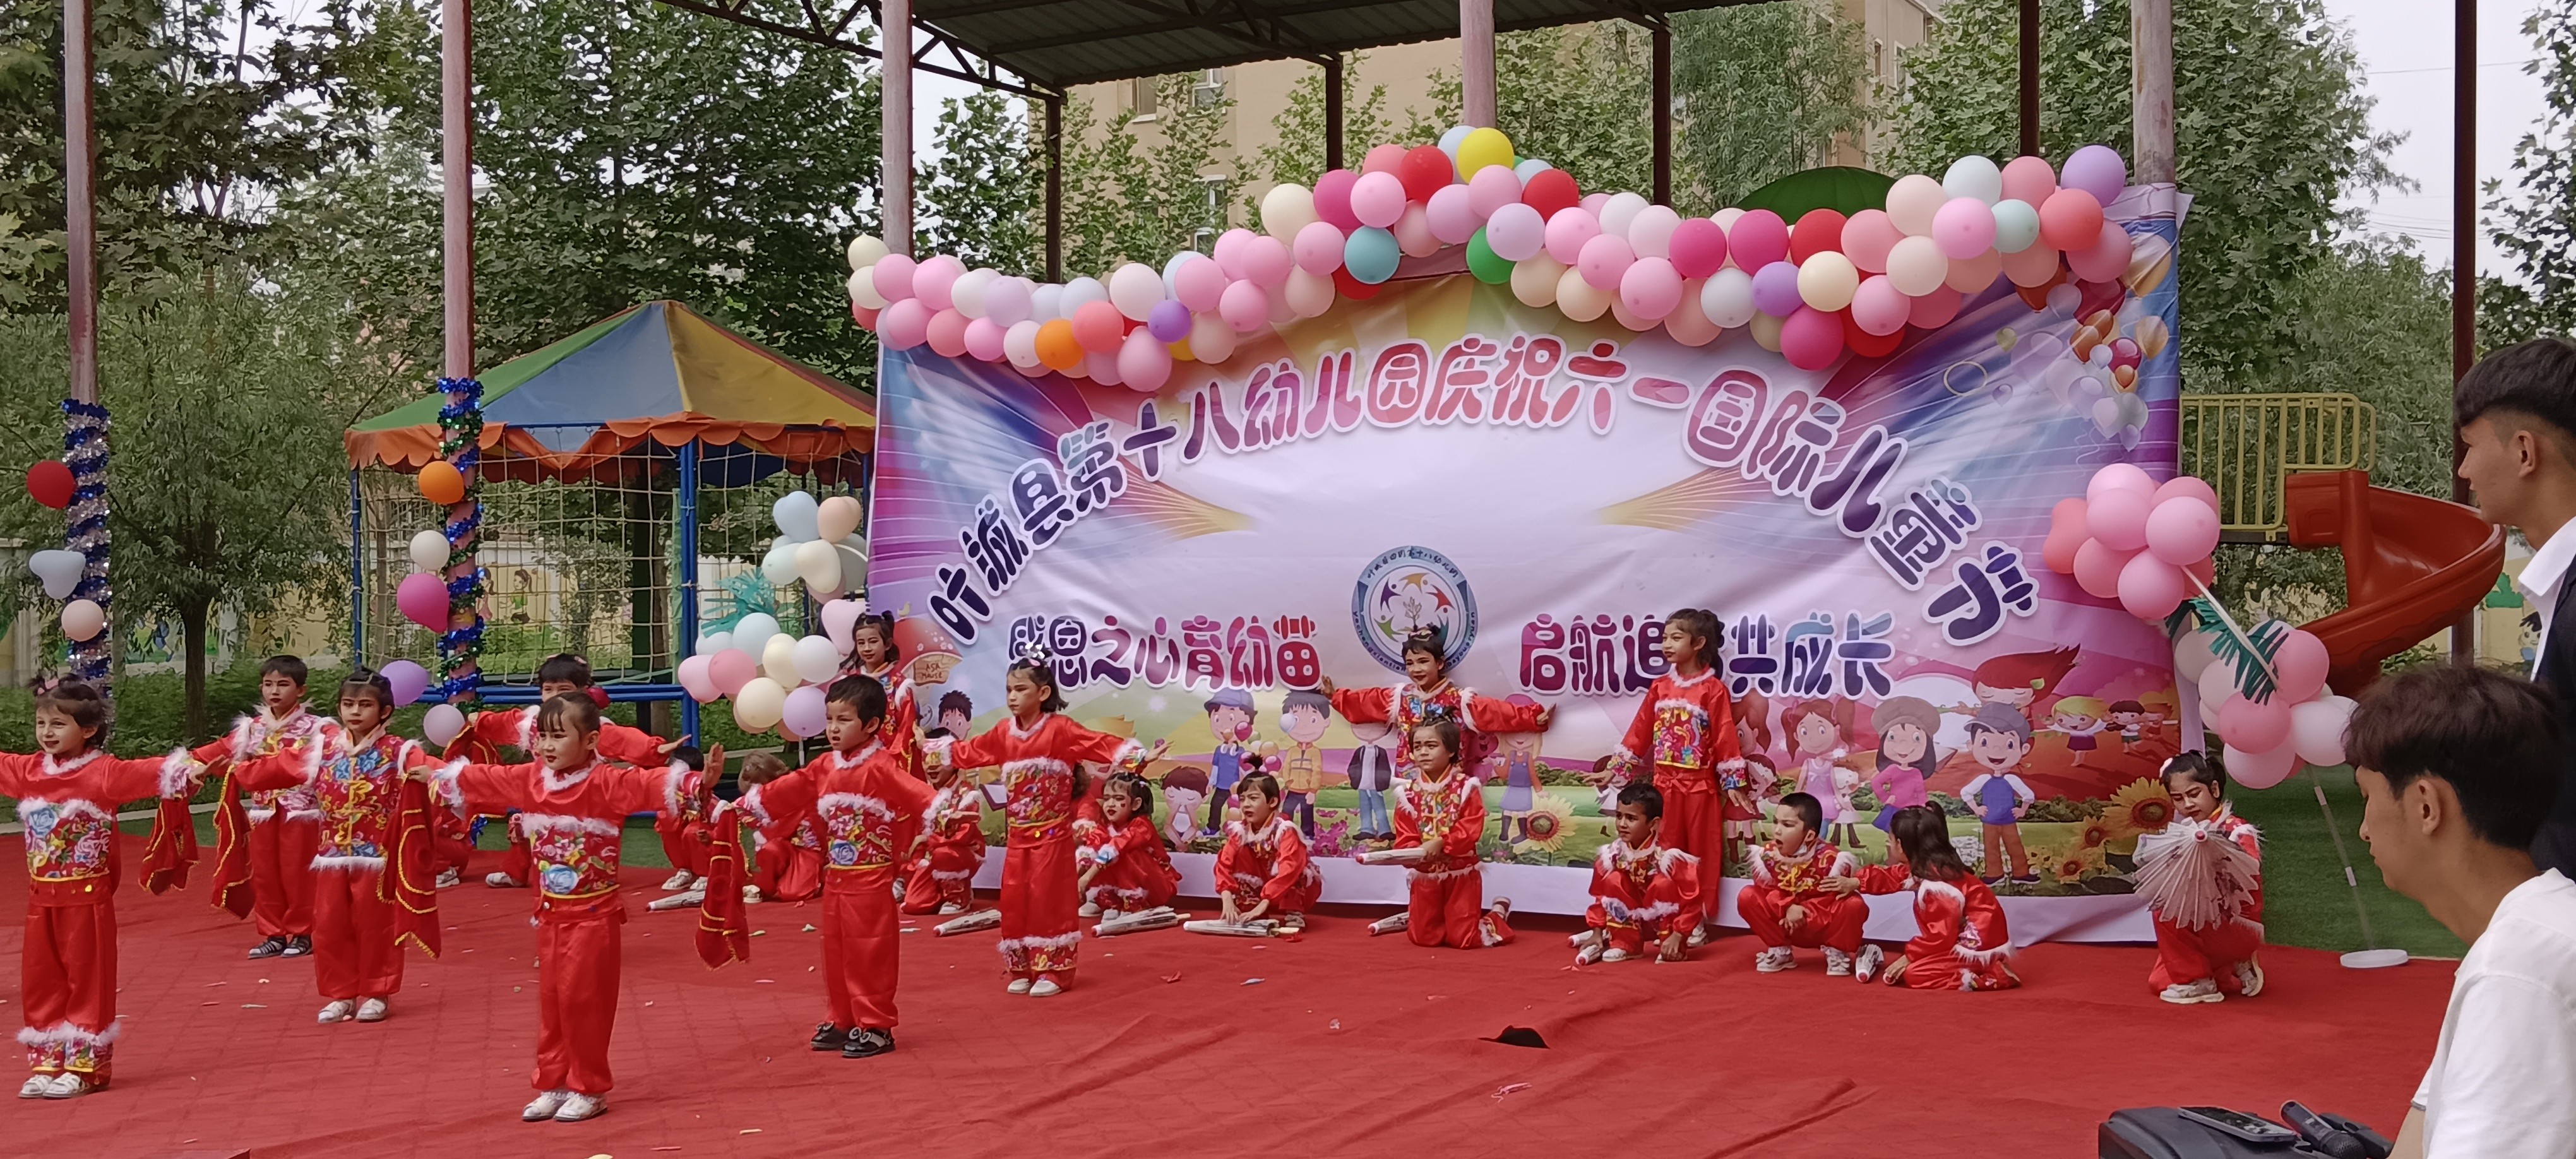 叶城县第十八幼儿园庆祝国际儿童节系列活动红红火火